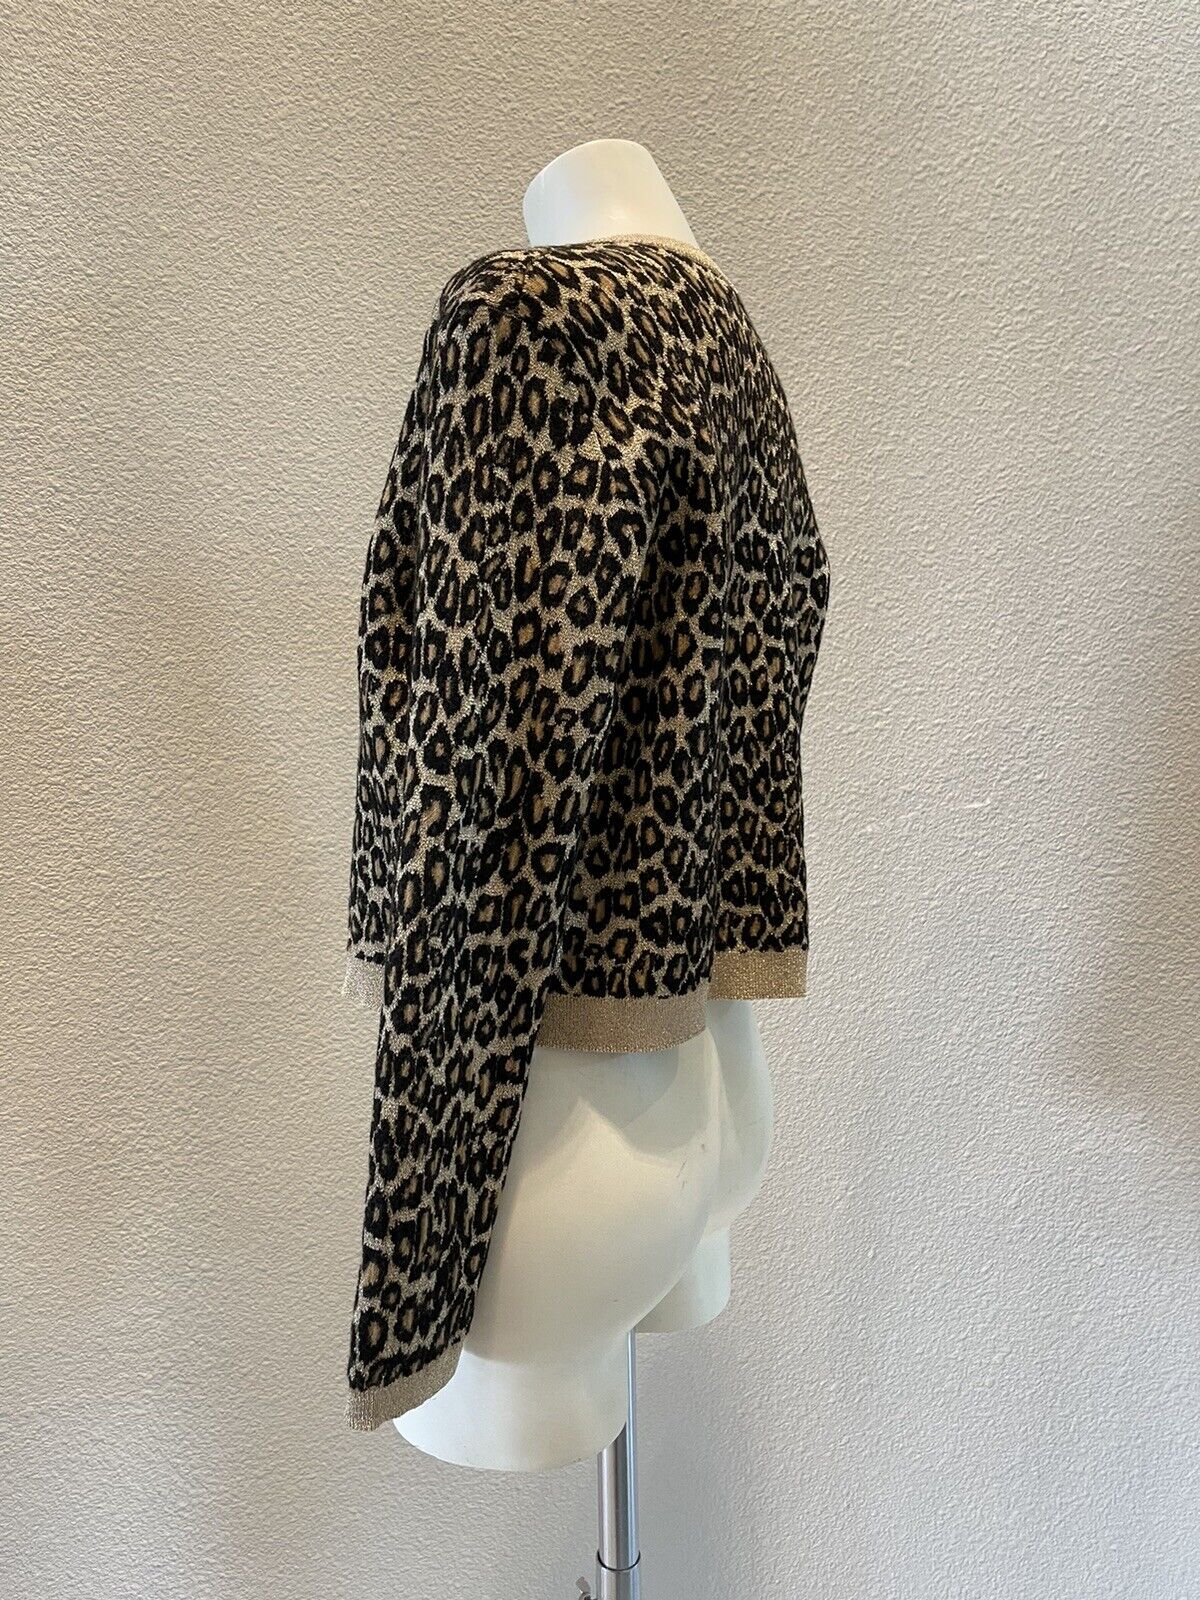 MIU MIU Wool Leopard Cardigan Size 44 - image 4